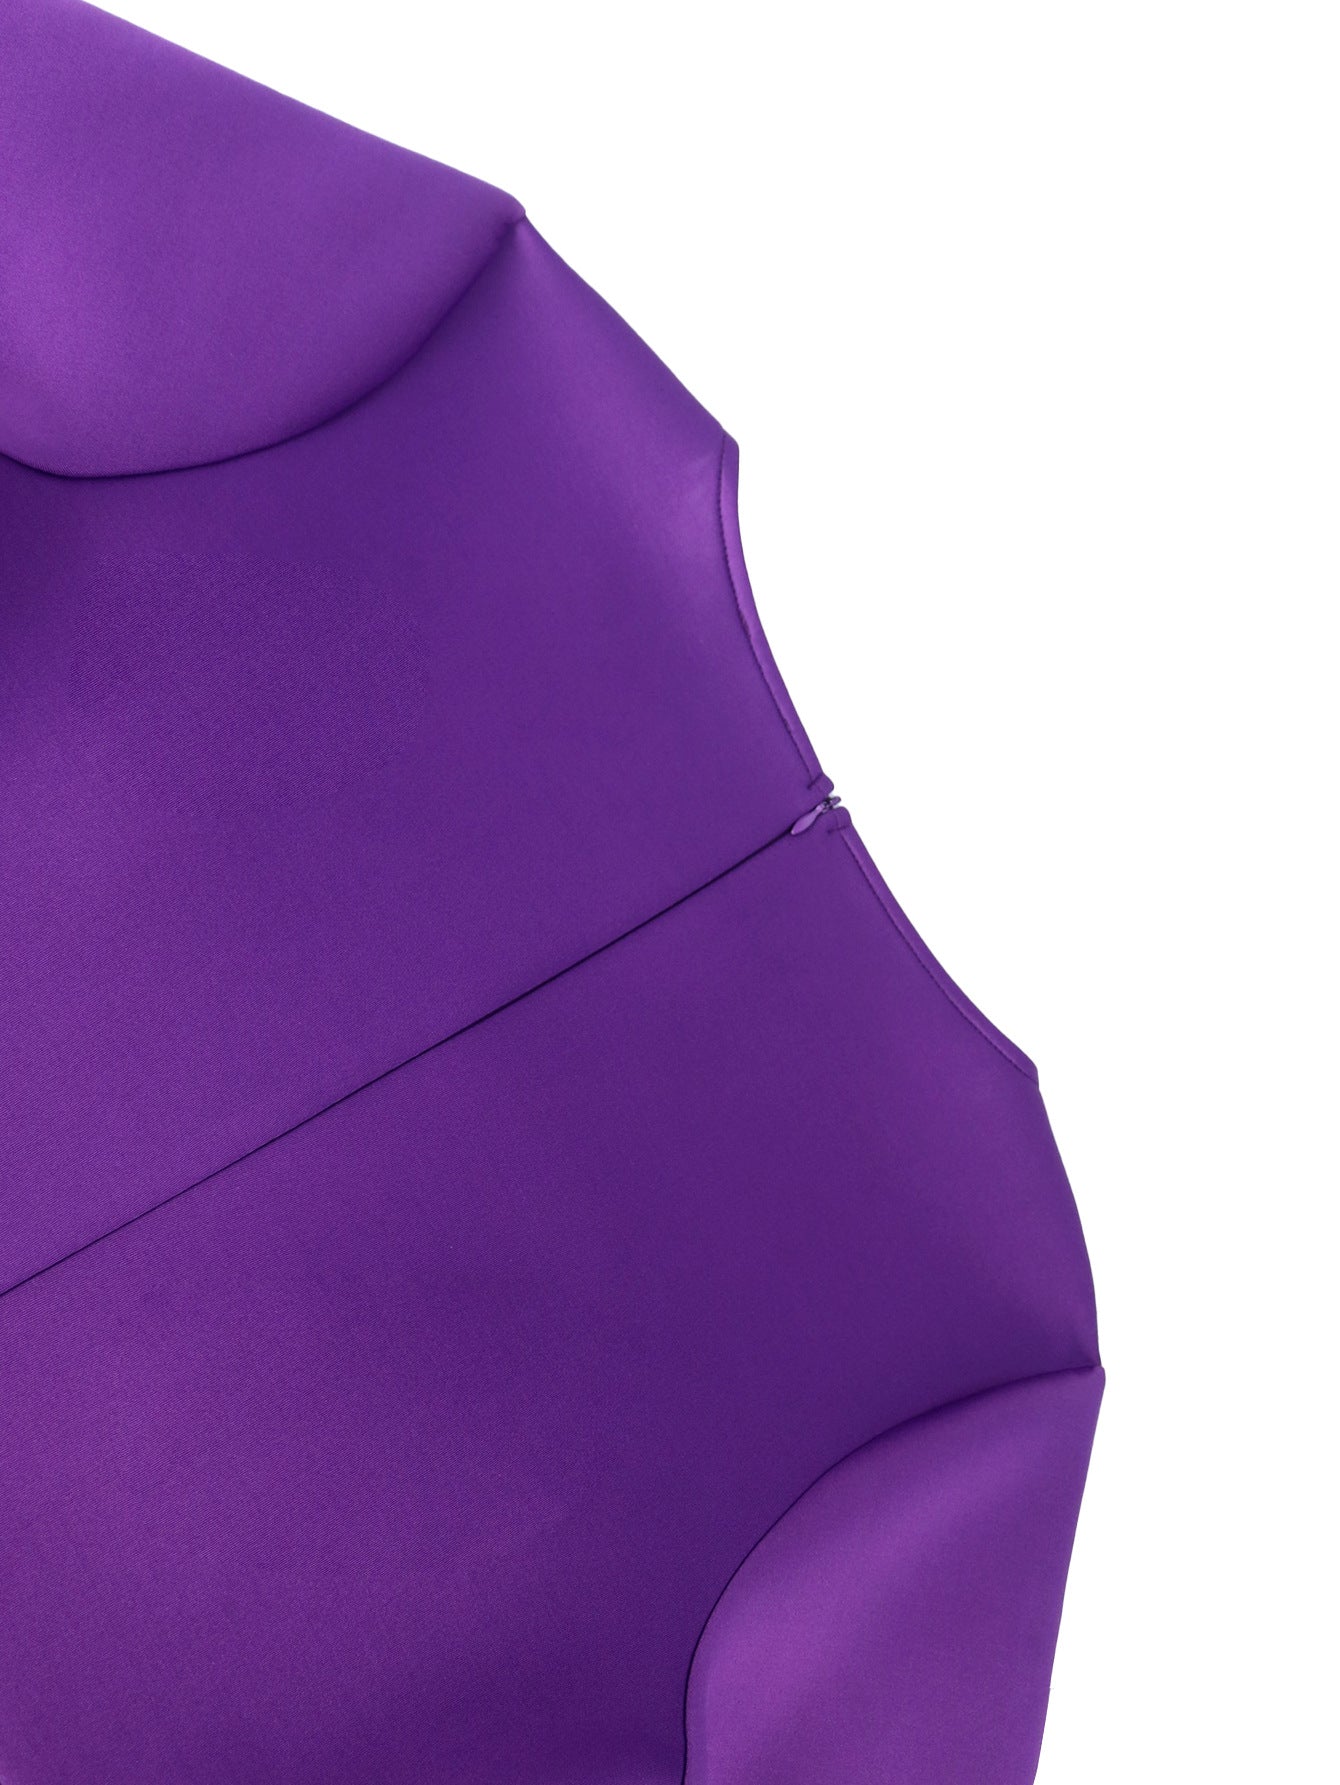 Designed Purple Plus Sizes Party Dresses